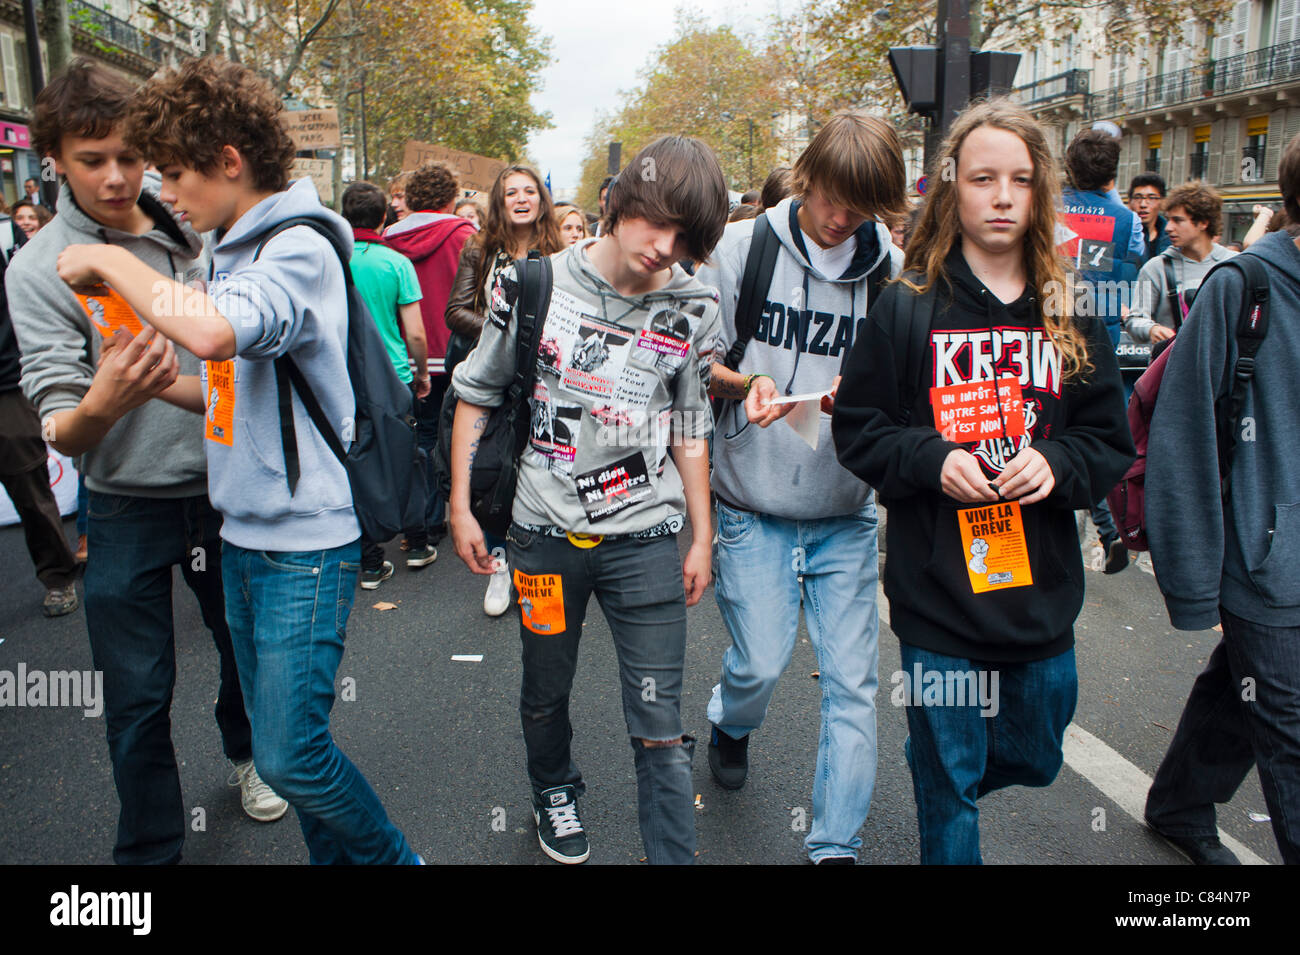 Muchedumbre de estudiantes adolescentes franceses marchan para protestar contra las medidas de austeridad del gobierno que afectan también a la educación. Paris, FRANCIA JÓVENES Demo Street, jóvenes protestando, marcha de la escuela secundaria, protestas presupuestarias Foto de stock